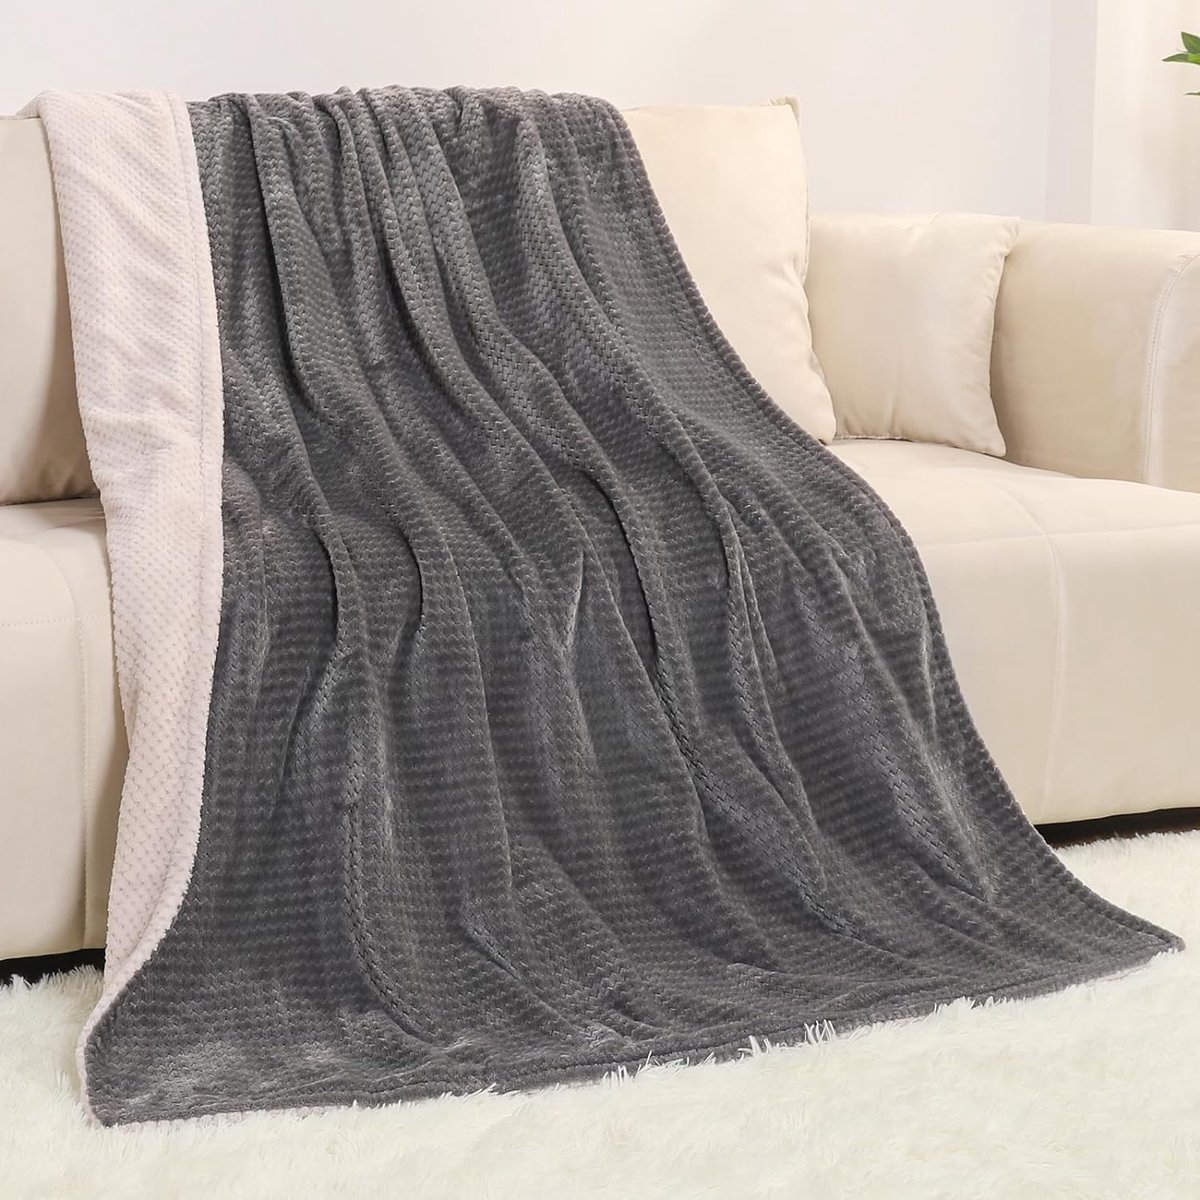 Elektrische deken 180 x 130 cm elektrische behaaglijke warmtedeken met automatische uitschakeling oververhittingsbeveiliging en 10 timers met 10 temperatuurniveaus wasbaar grijs en beige